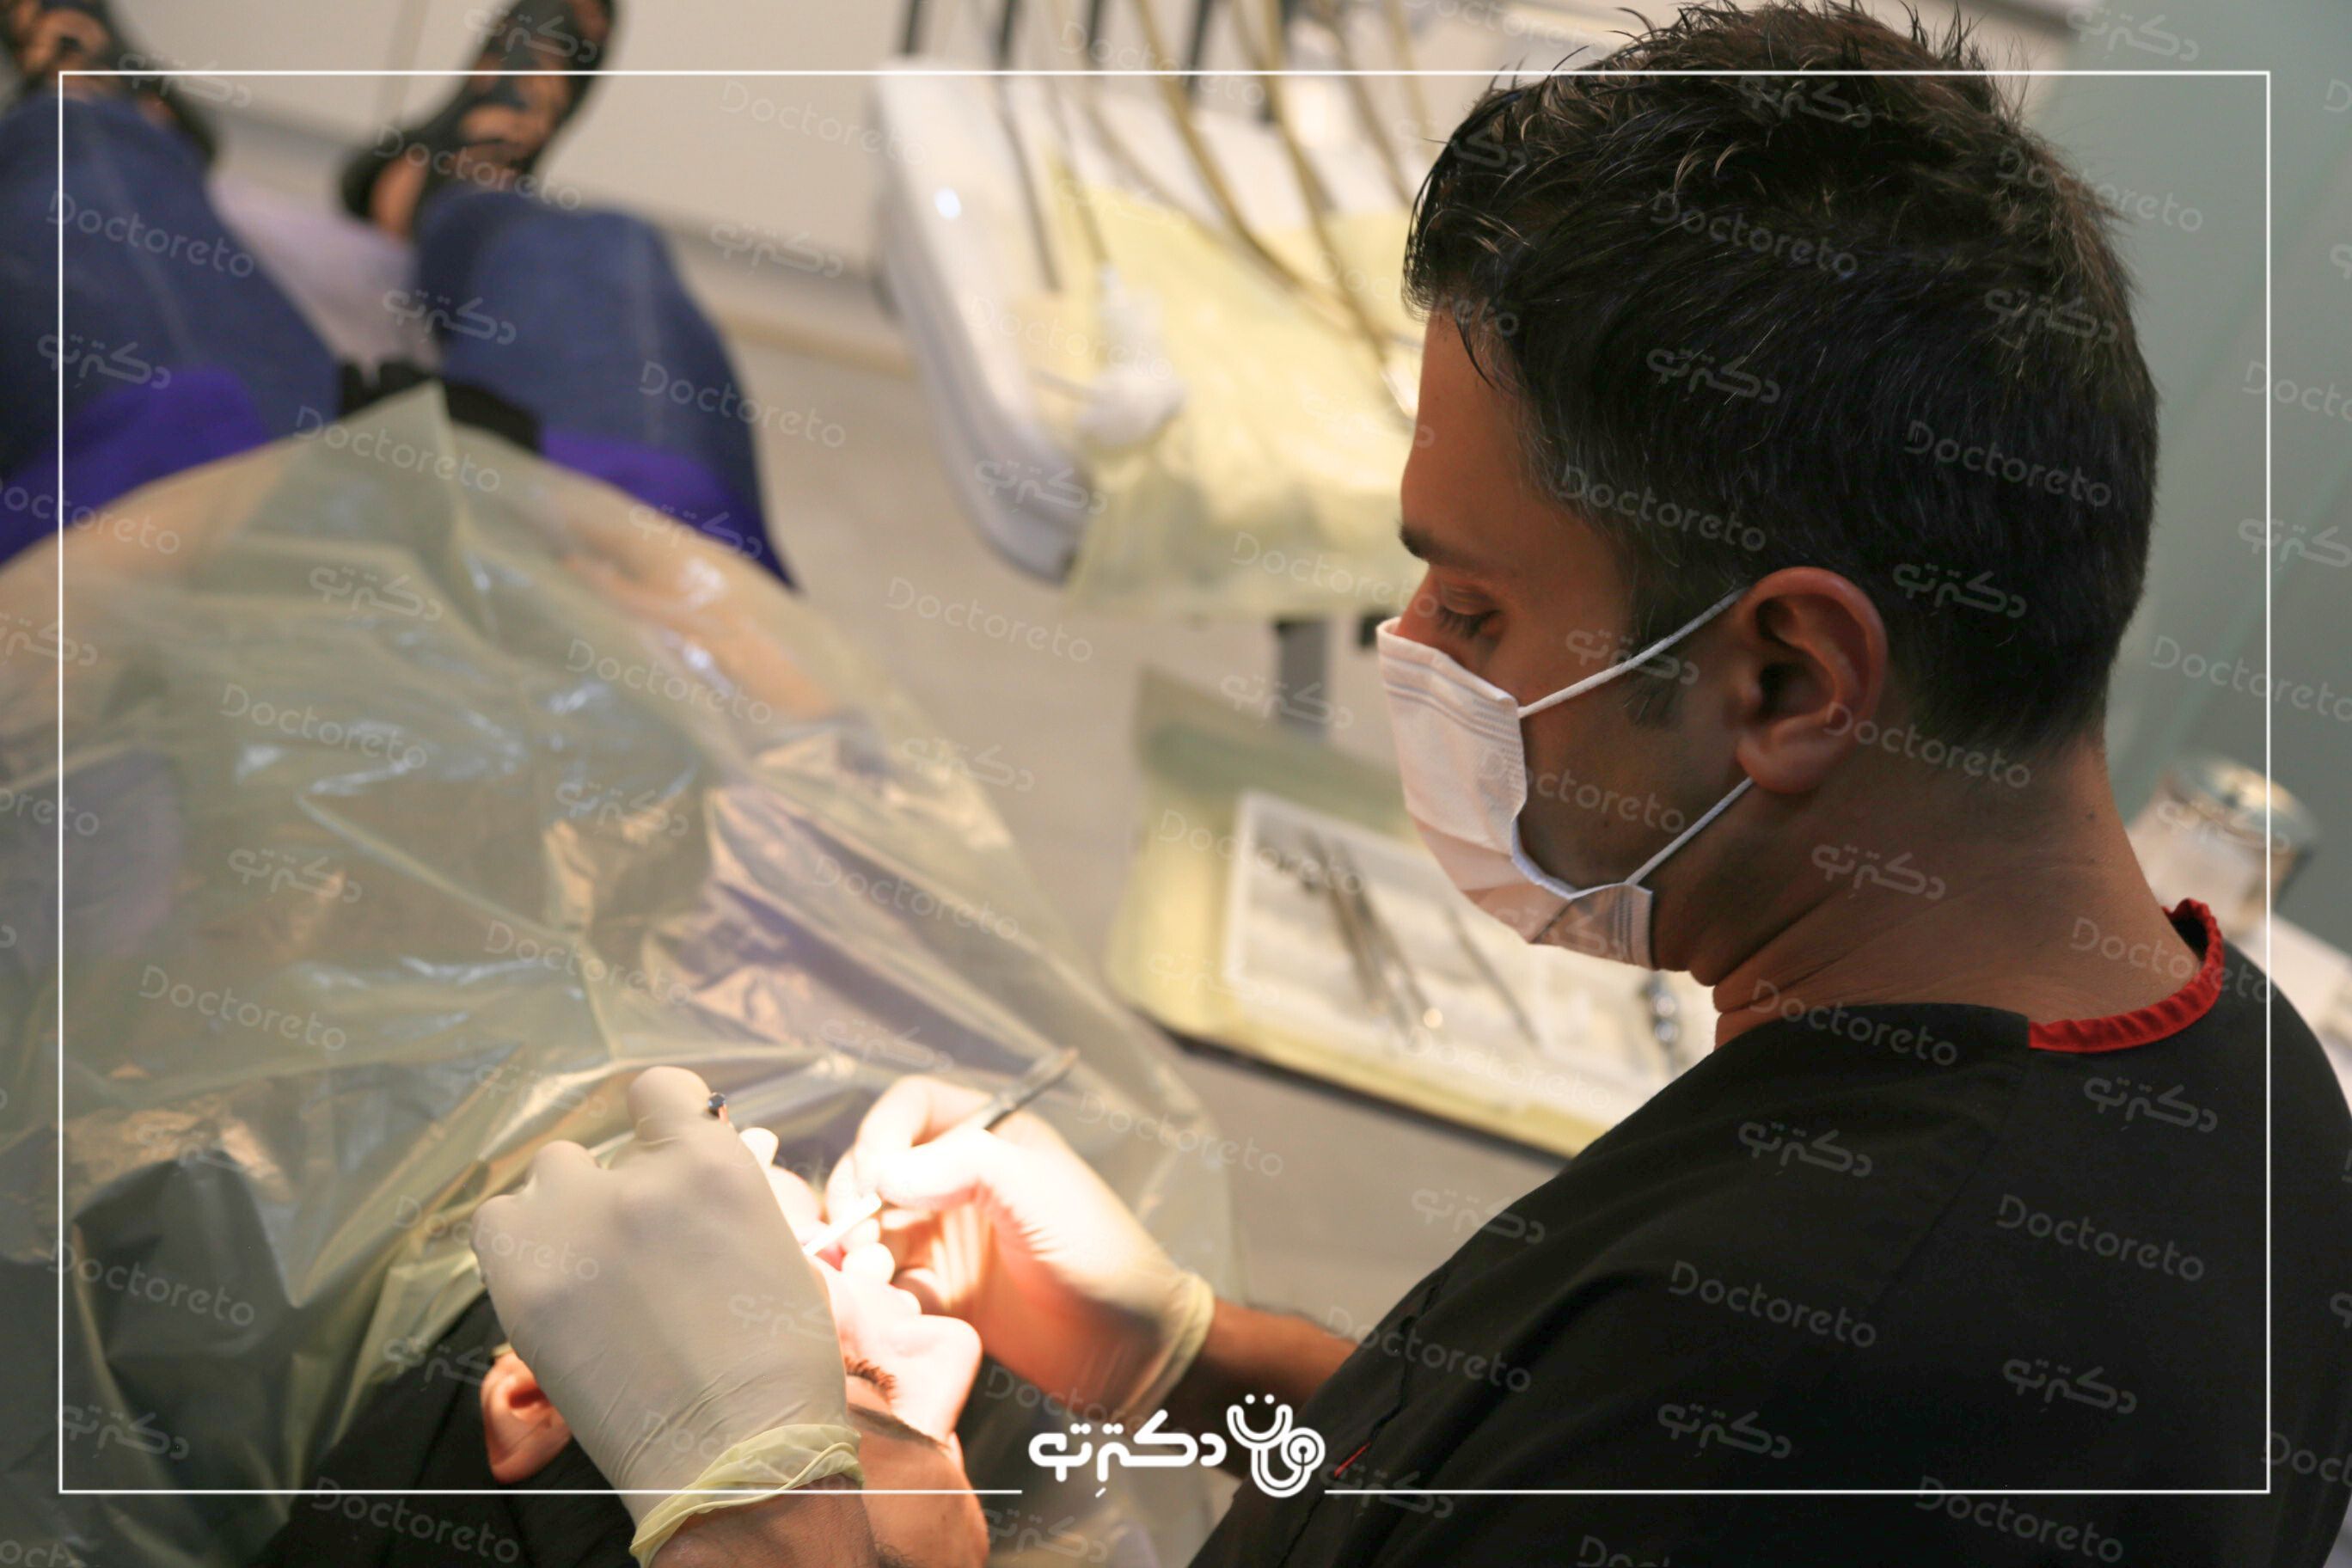 بیلدآپ (بازسازی) دندان با آمالگام دکتر امیر خلیلیان در اصفهان 8